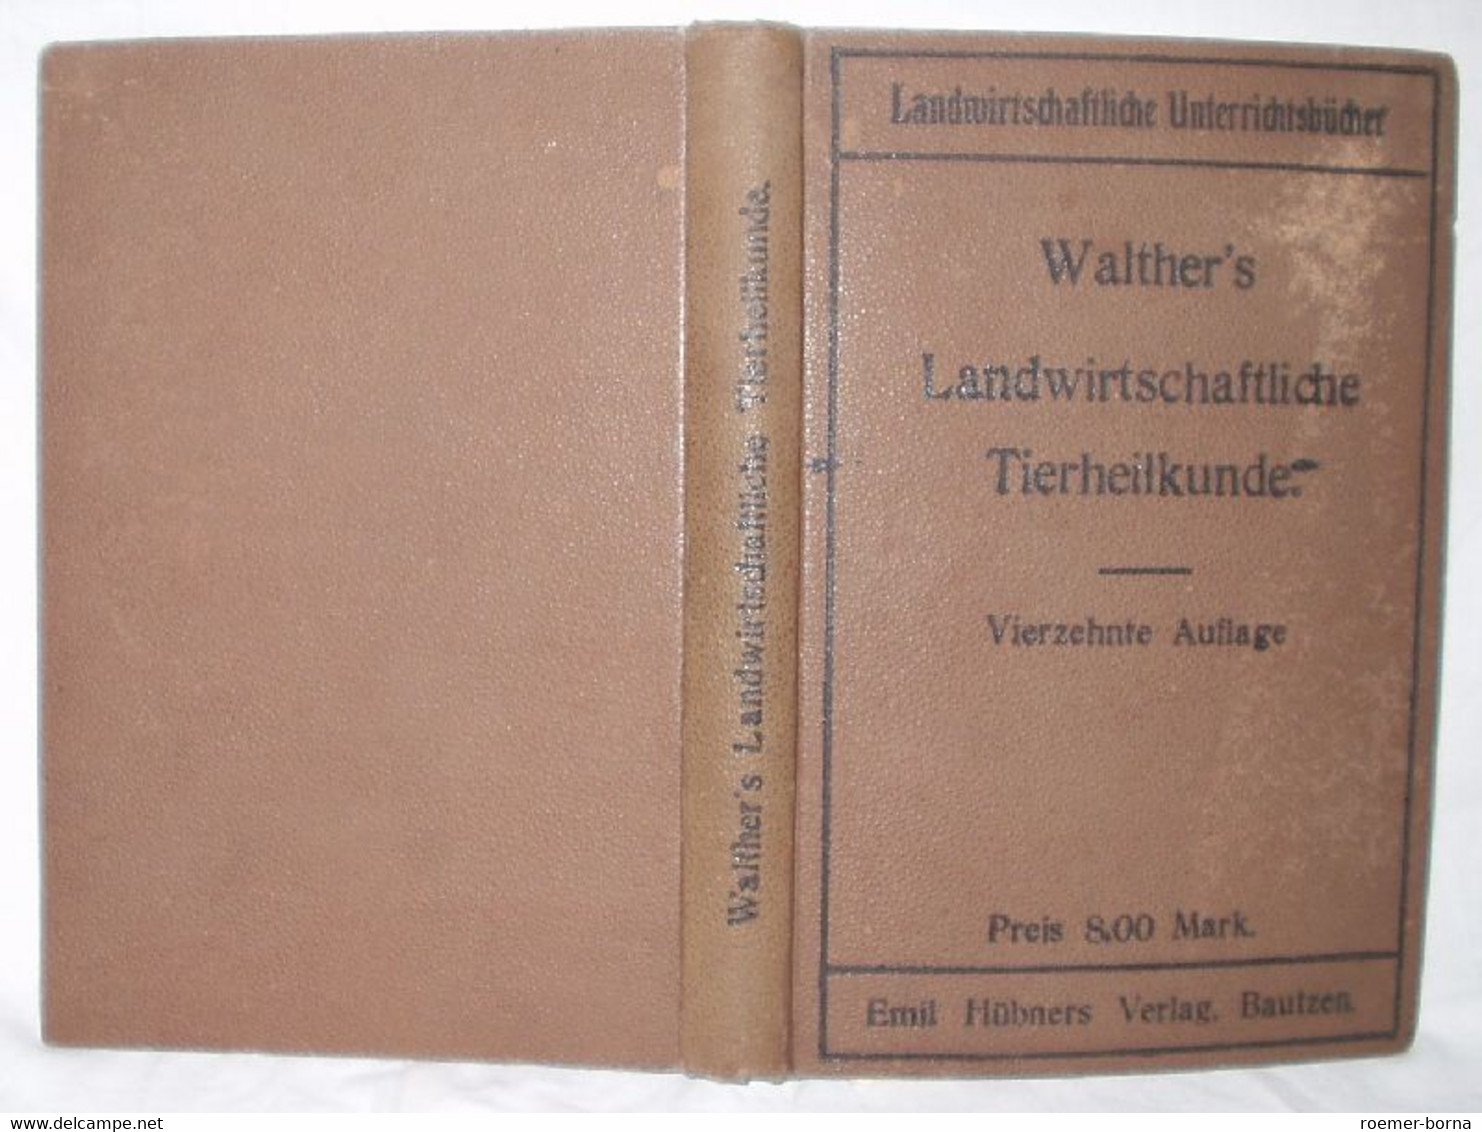 Walthers Landwirtschaftliche Tierheilkunde - Animaux